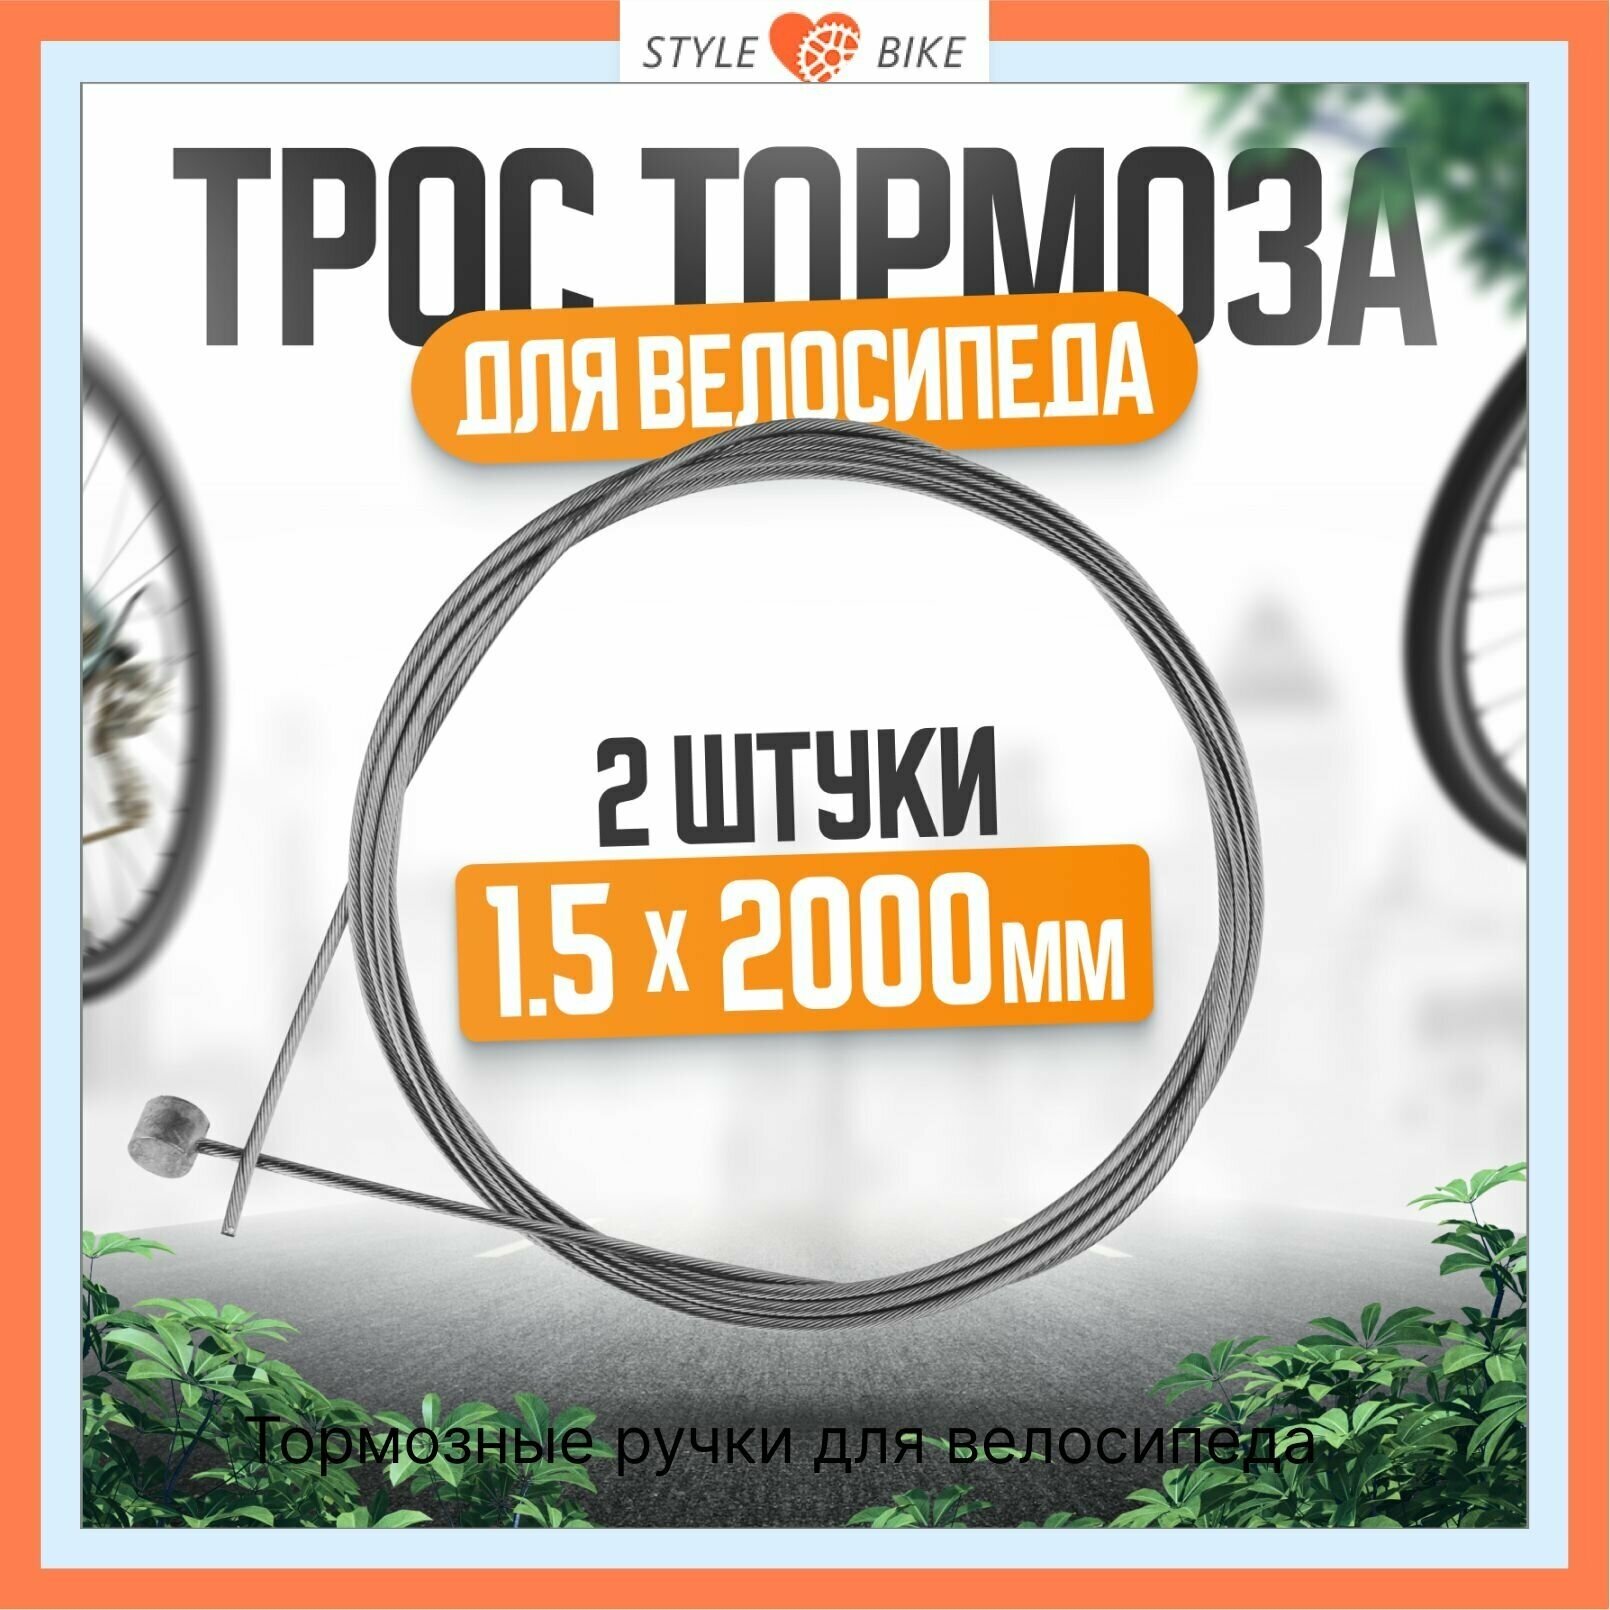 Трос тормоза для велосипеда сталь 1,5 мм x 2000 мм, с гальваническим покрытием (комплект 2 шт) + 2 латунных наконечника.